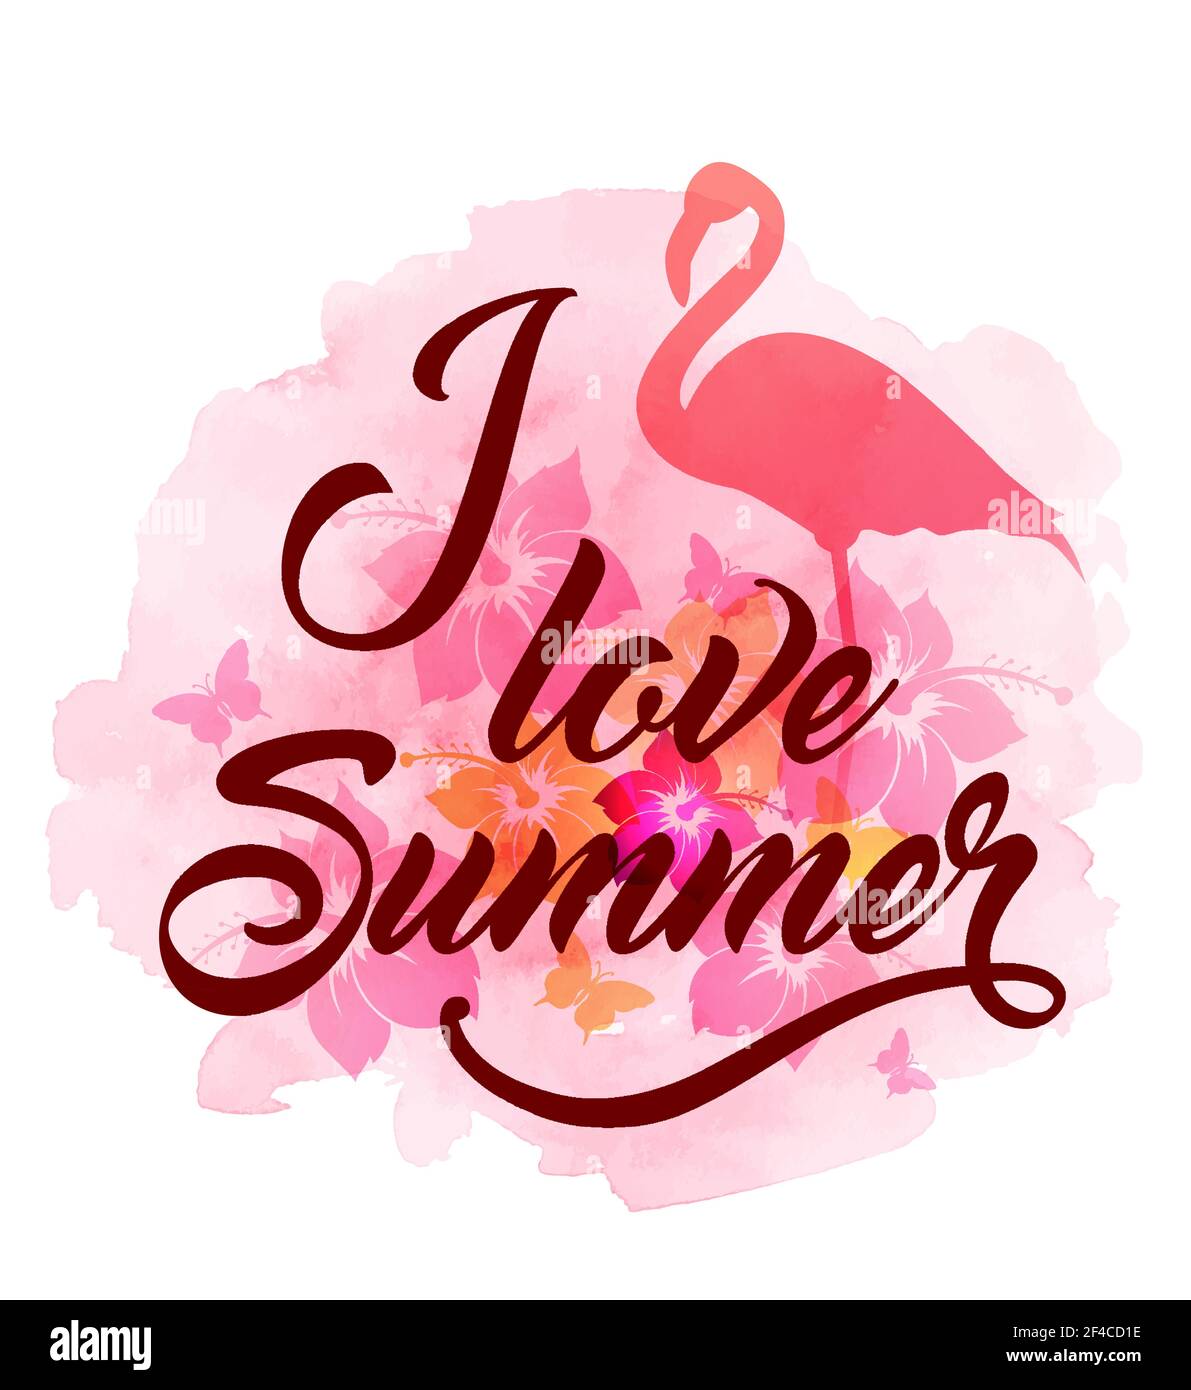 Arrière-plan tropical d'été abstrait avec flamants roses, fleurs et texture aquarelle. Illustration vectorielle. Fond tropical avec flamants roses Illustration de Vecteur